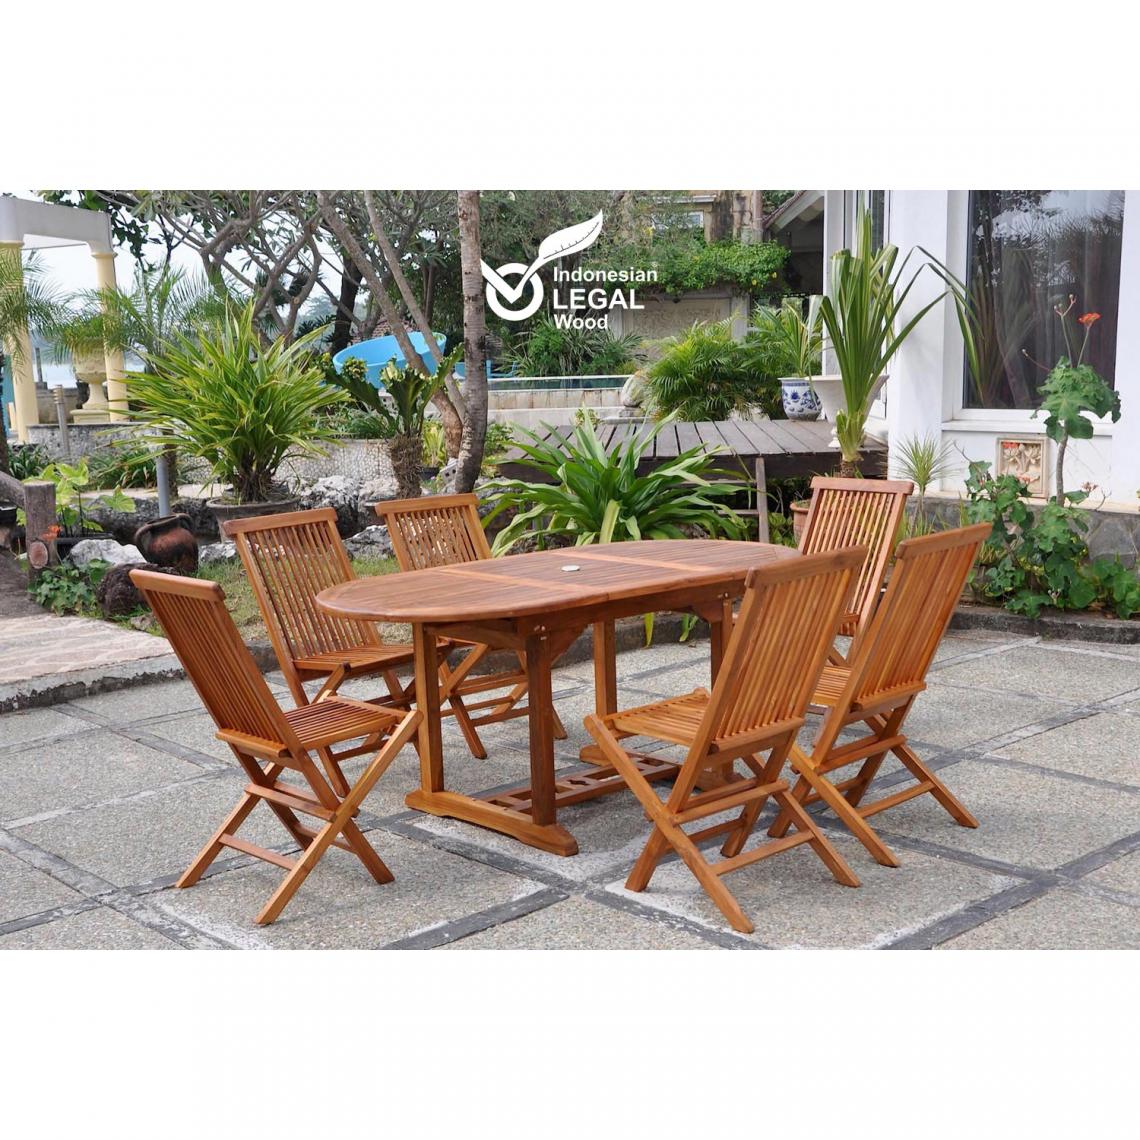 Concept Usine - Lubok : Salon de jardin Teck huilé 6 personnes - Table ovale + 6 chaises - Ensembles tables et chaises